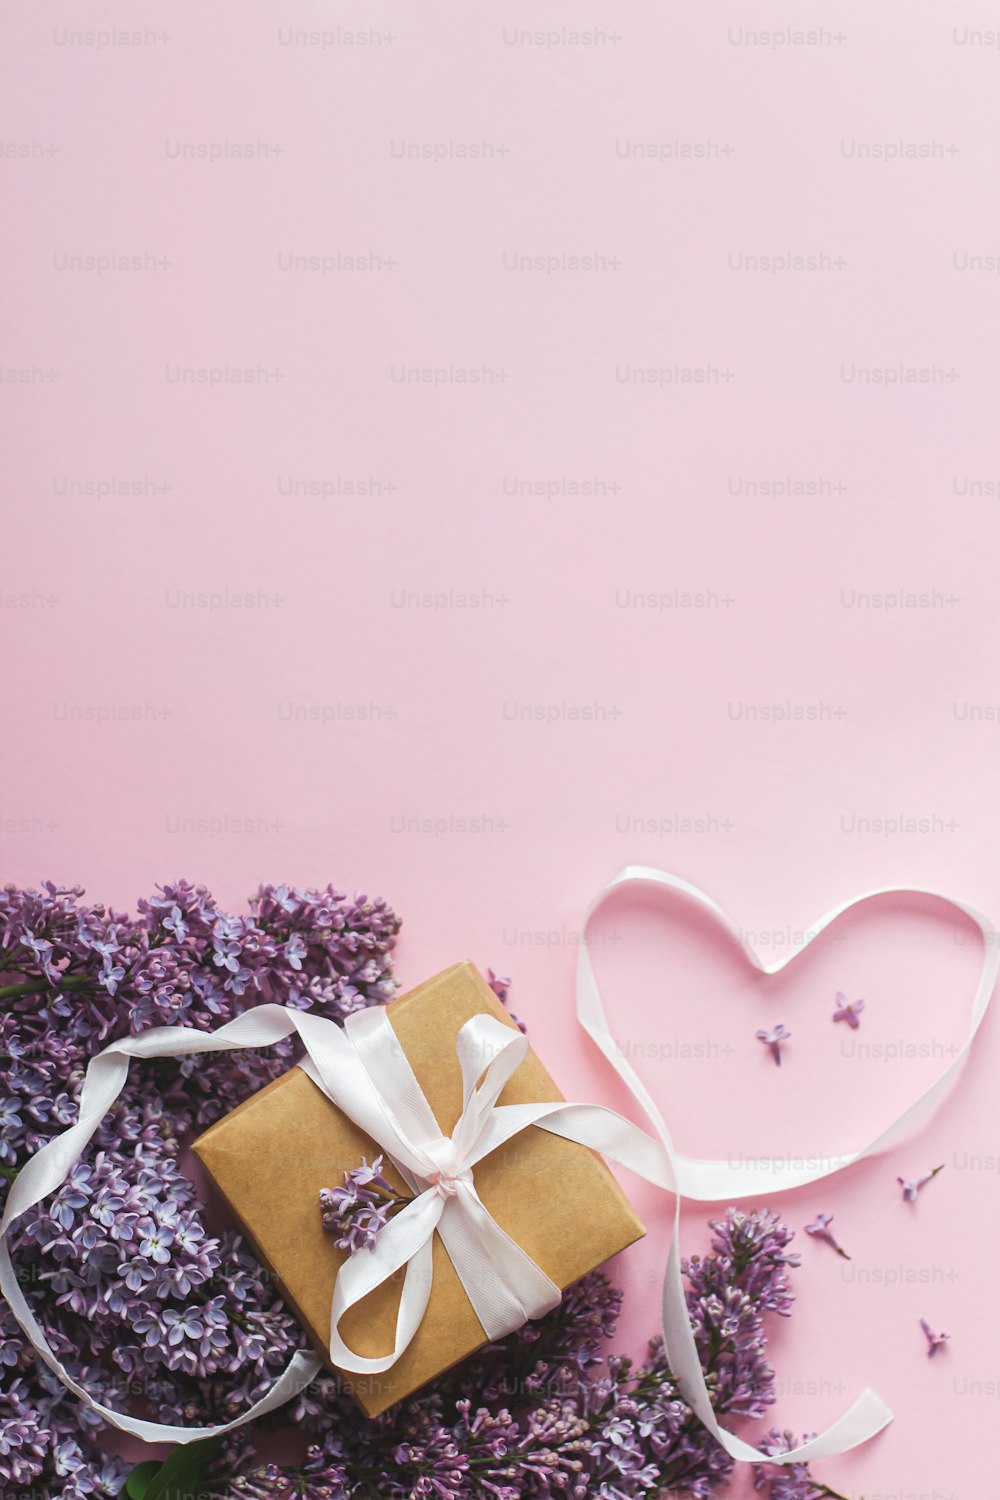 ピンクの紙にライラックの花、ギフトボックス、ハートのリボン、コピースペース付きのフラットレイ。スタイリッシュな花のグリーティングカード。ハッピーバレンタインデーと母の日のコンセプト。パープルライラックの花束とクラフトプレゼント